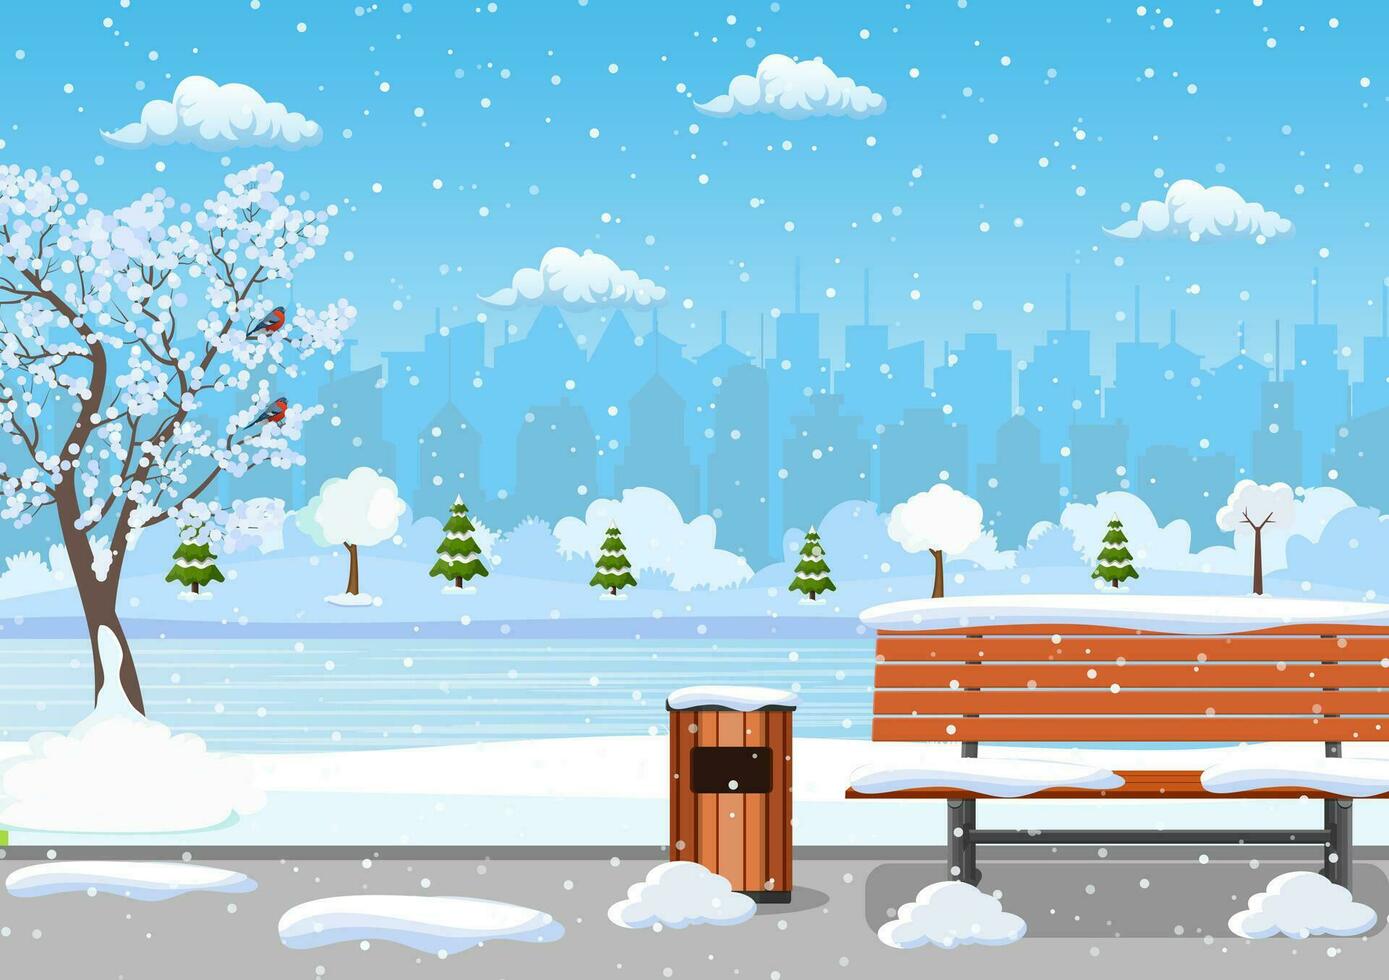 invierno día parque escena. nieve cubierto de madera banco con calle lámpara y basura poder. Navidad paisaje antecedentes con nieve y árbol. alegre Navidad día festivo. vector ilustración en plano estilo